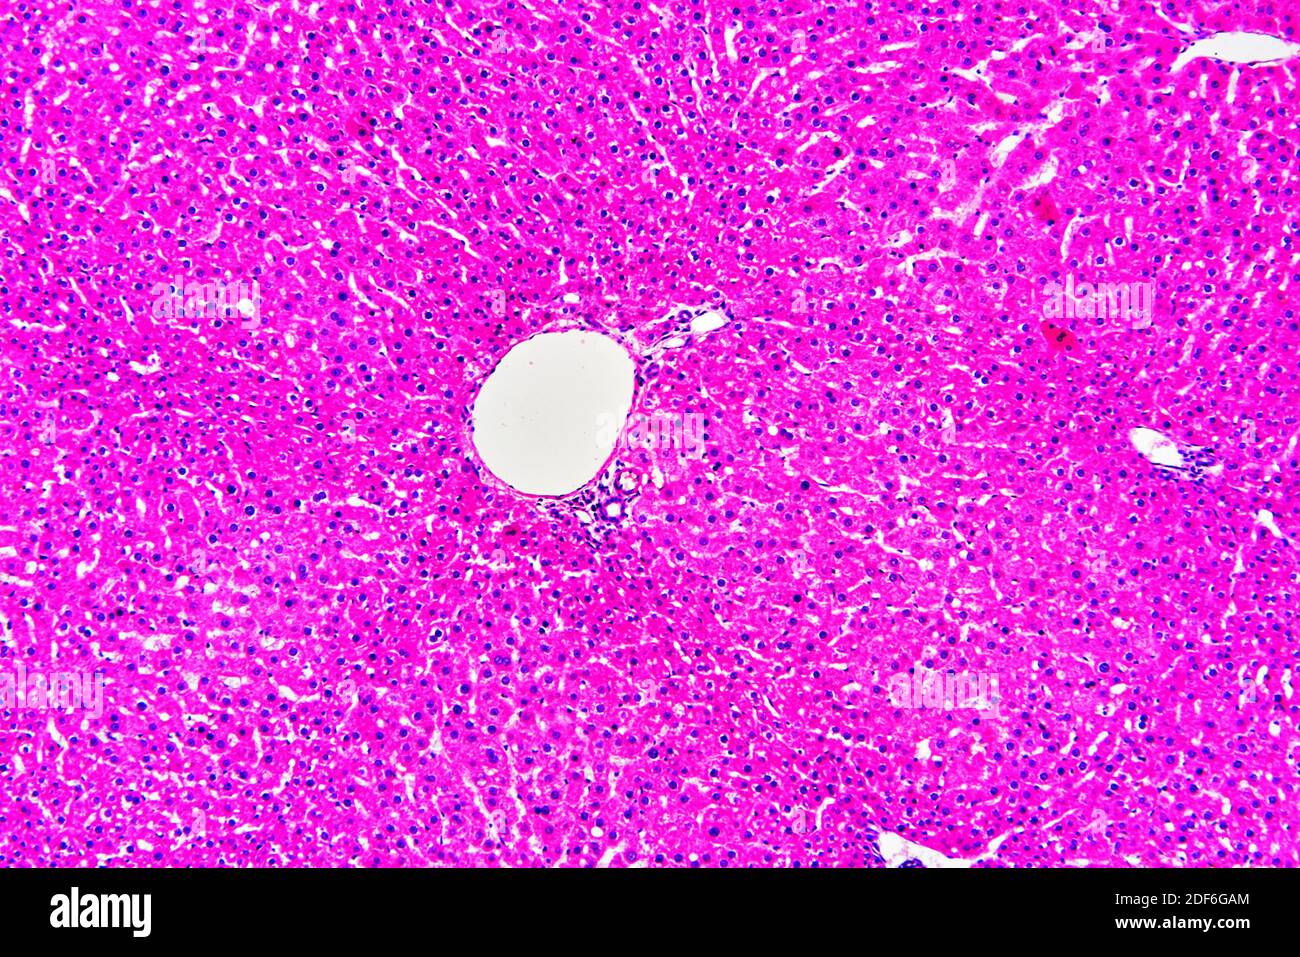 Fegato umano sano o normale con epatociti e vasi sanguigni. Microscopio ottico X100. Foto Stock